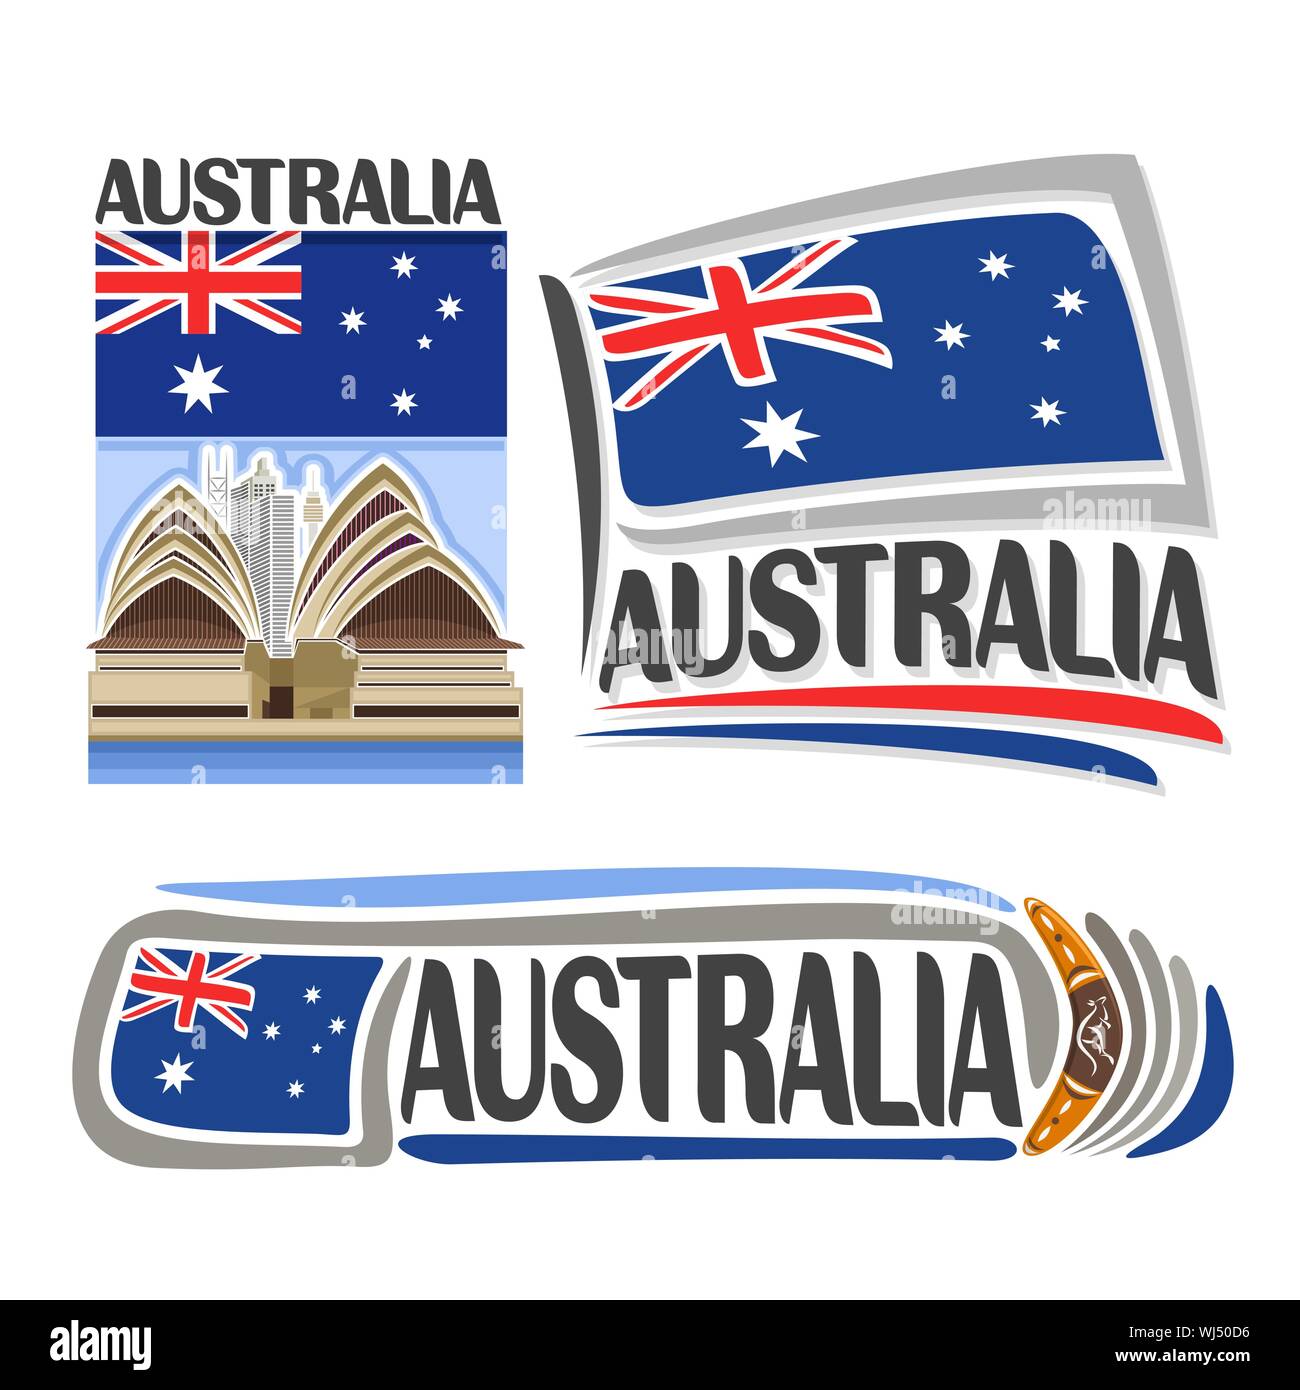 Il logo del vettore per l'Australia, 3 isolato immagini: banner verticale con il cartoon Sydney Opera House sulla nazionale australiano flag di stato e simbolo di aborigeni Illustrazione Vettoriale